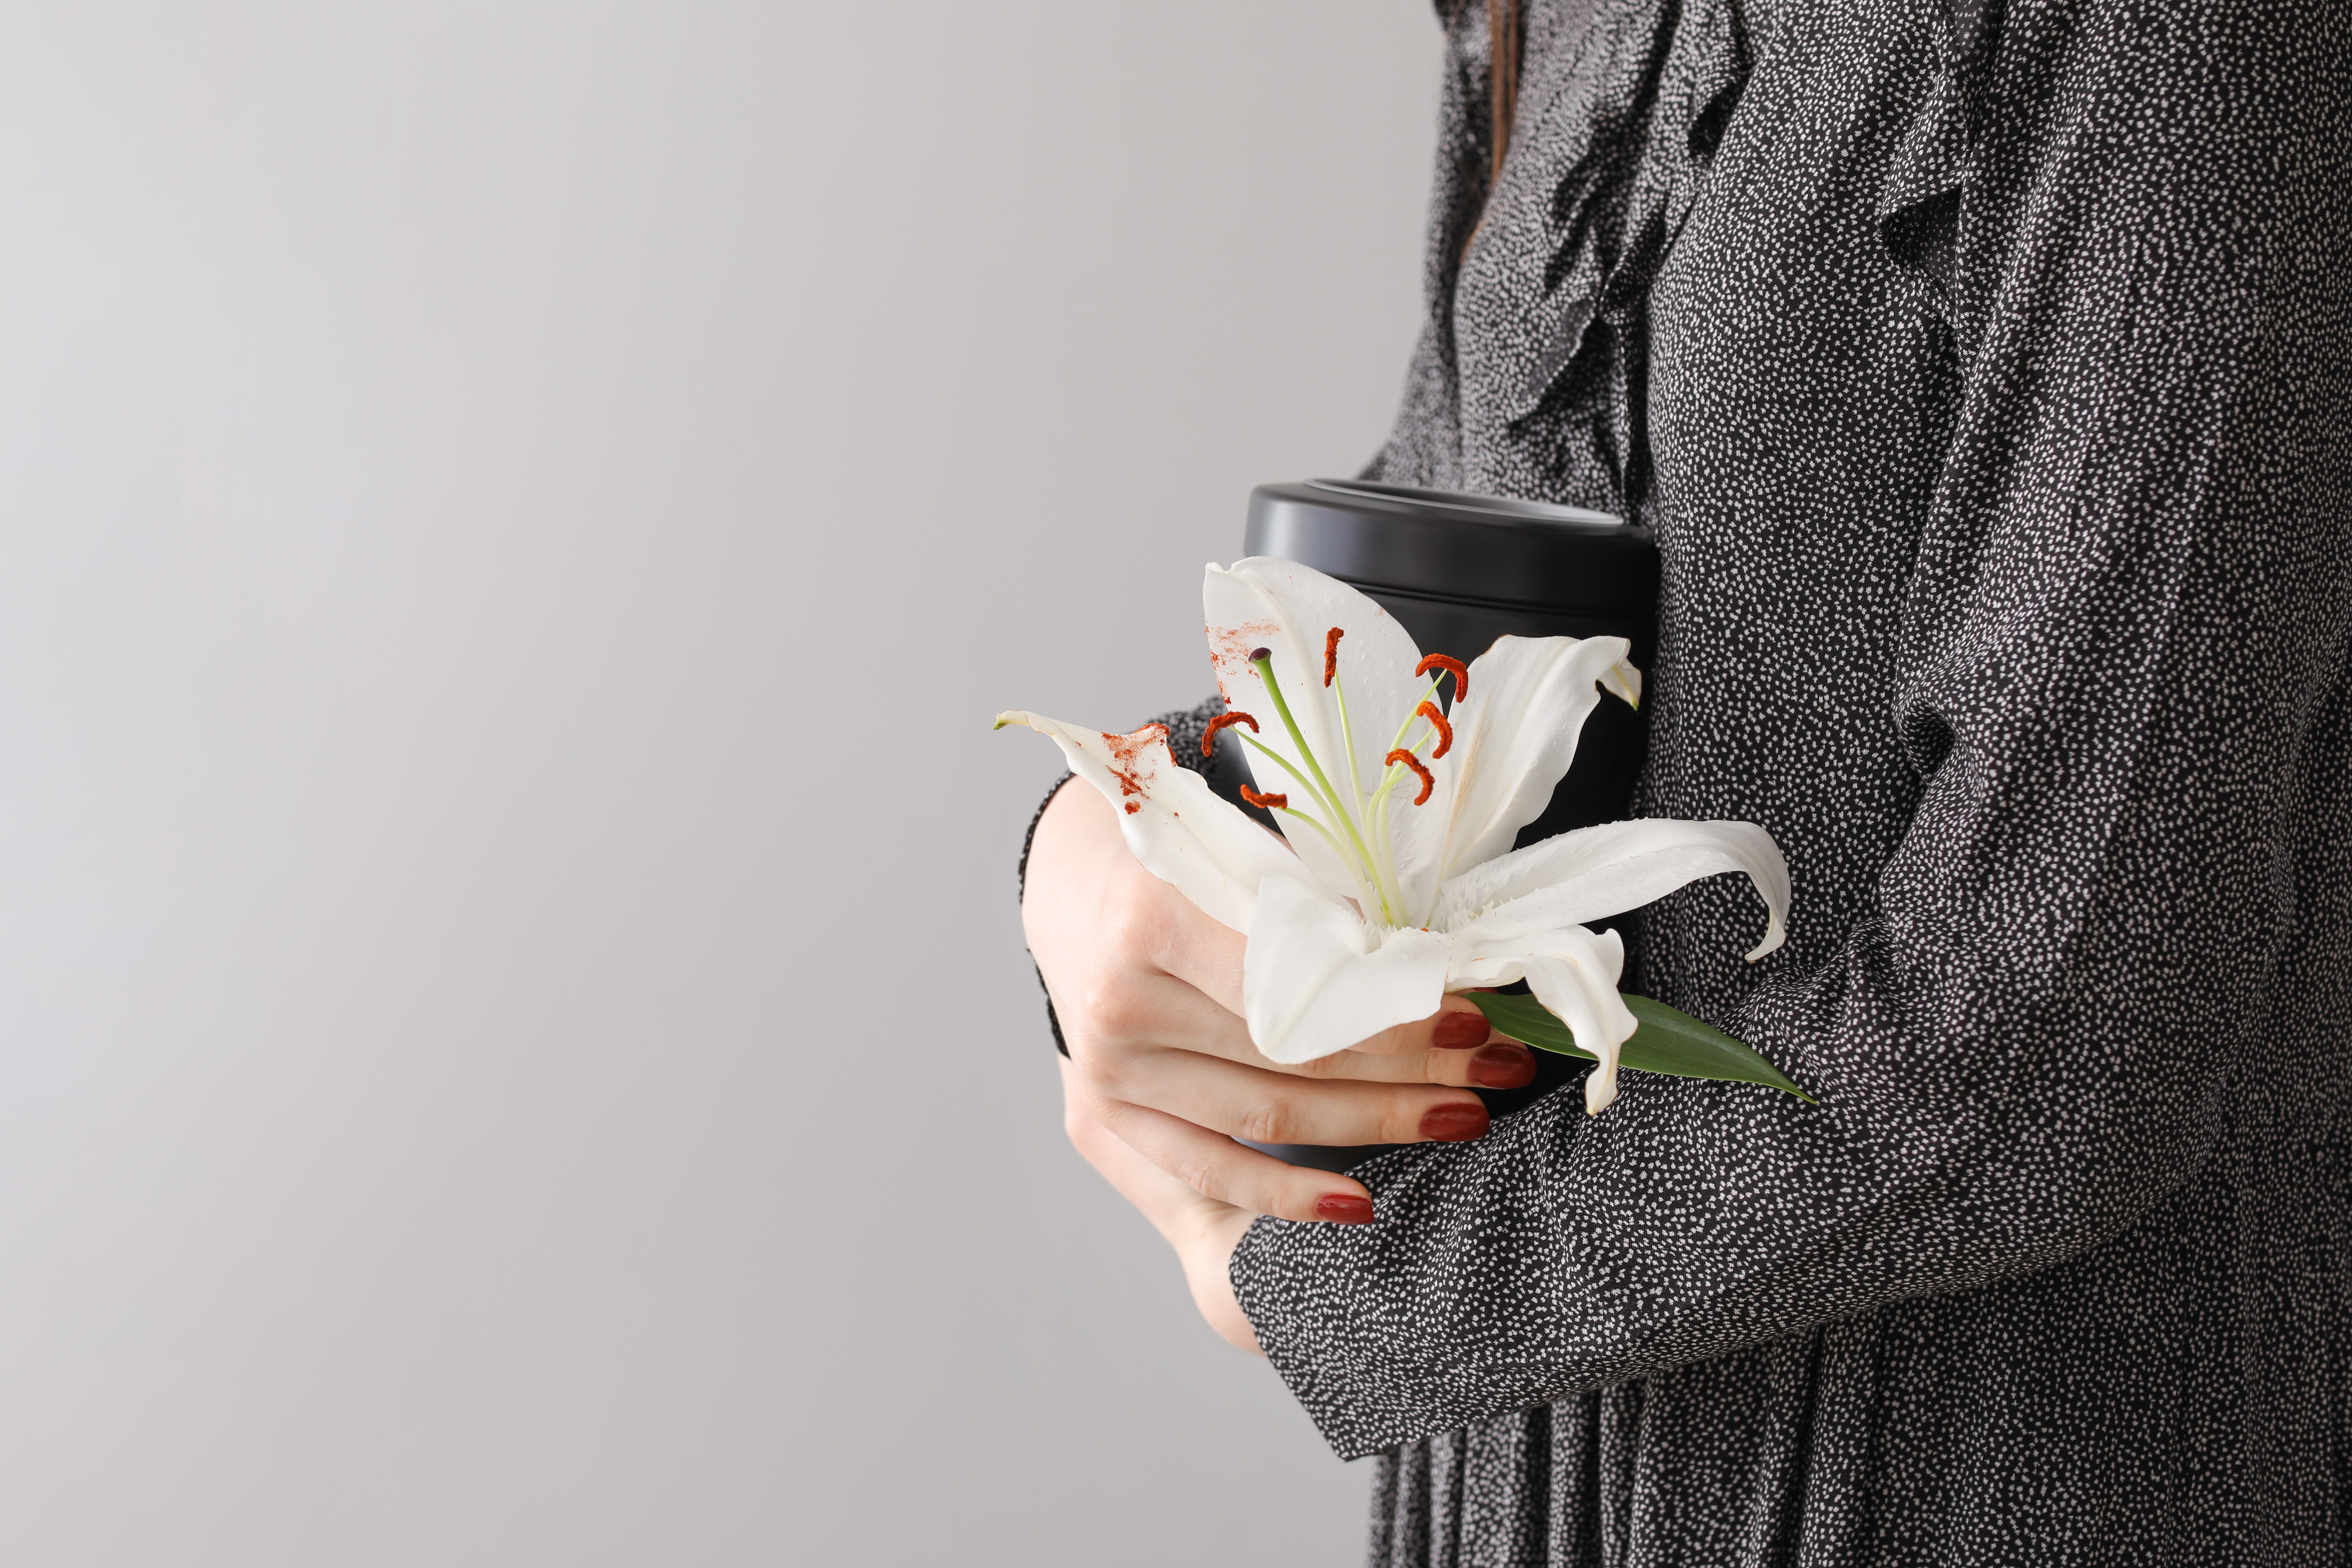 On voit une femme tenant une urne mortuaire et une fleur de lys blanc | Source : Shutterstock